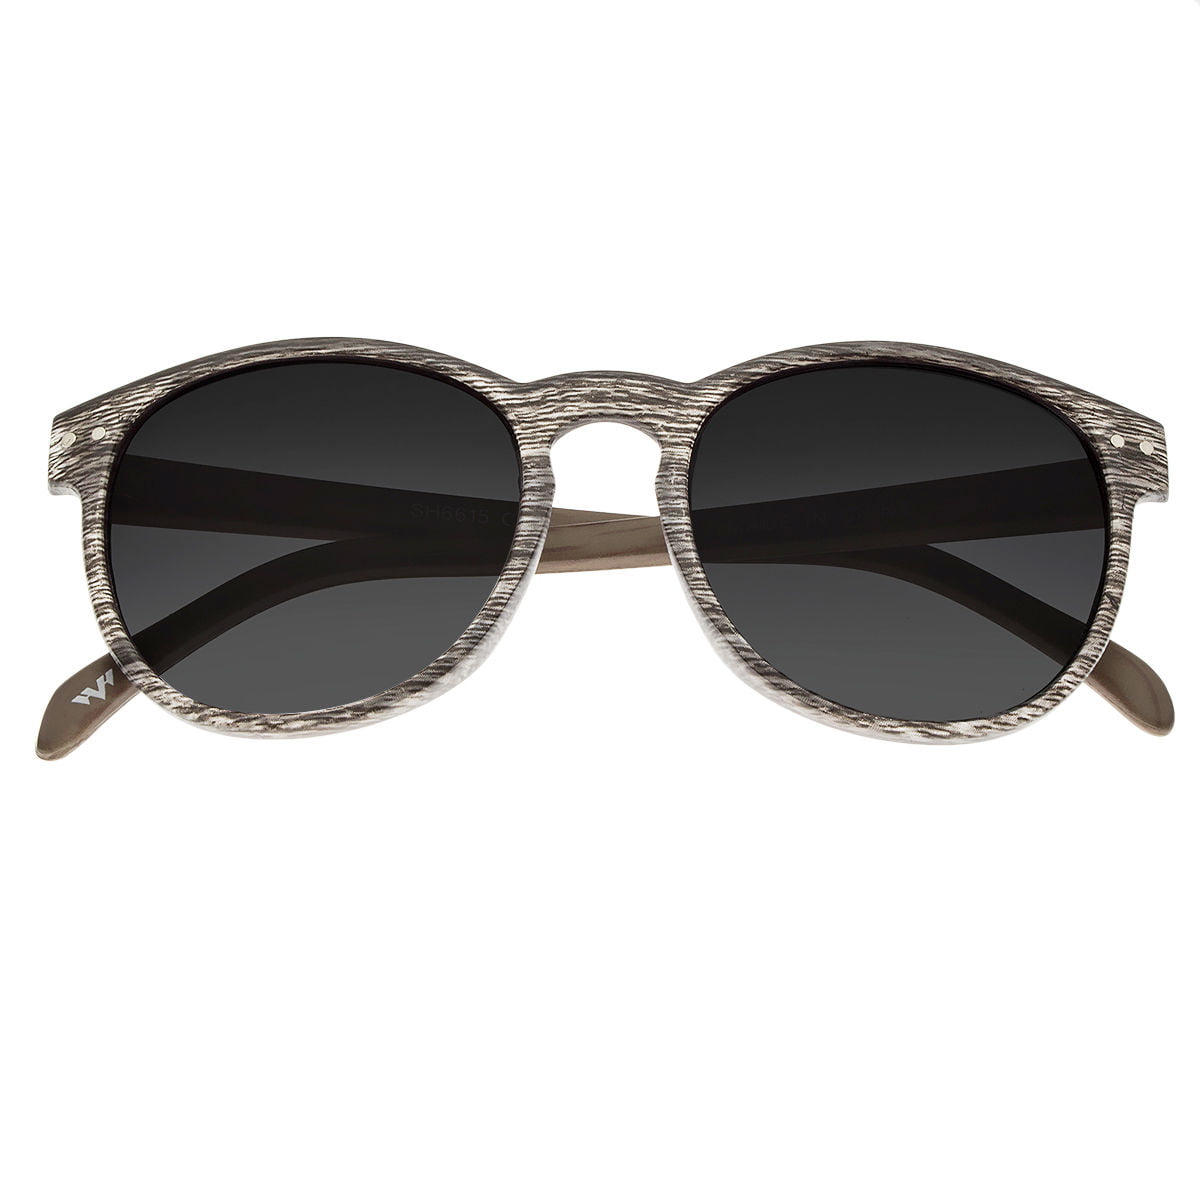 Retro Oliver Vintage Inspired Fashion Round Circle Key Hole Bridge Sunglasses 